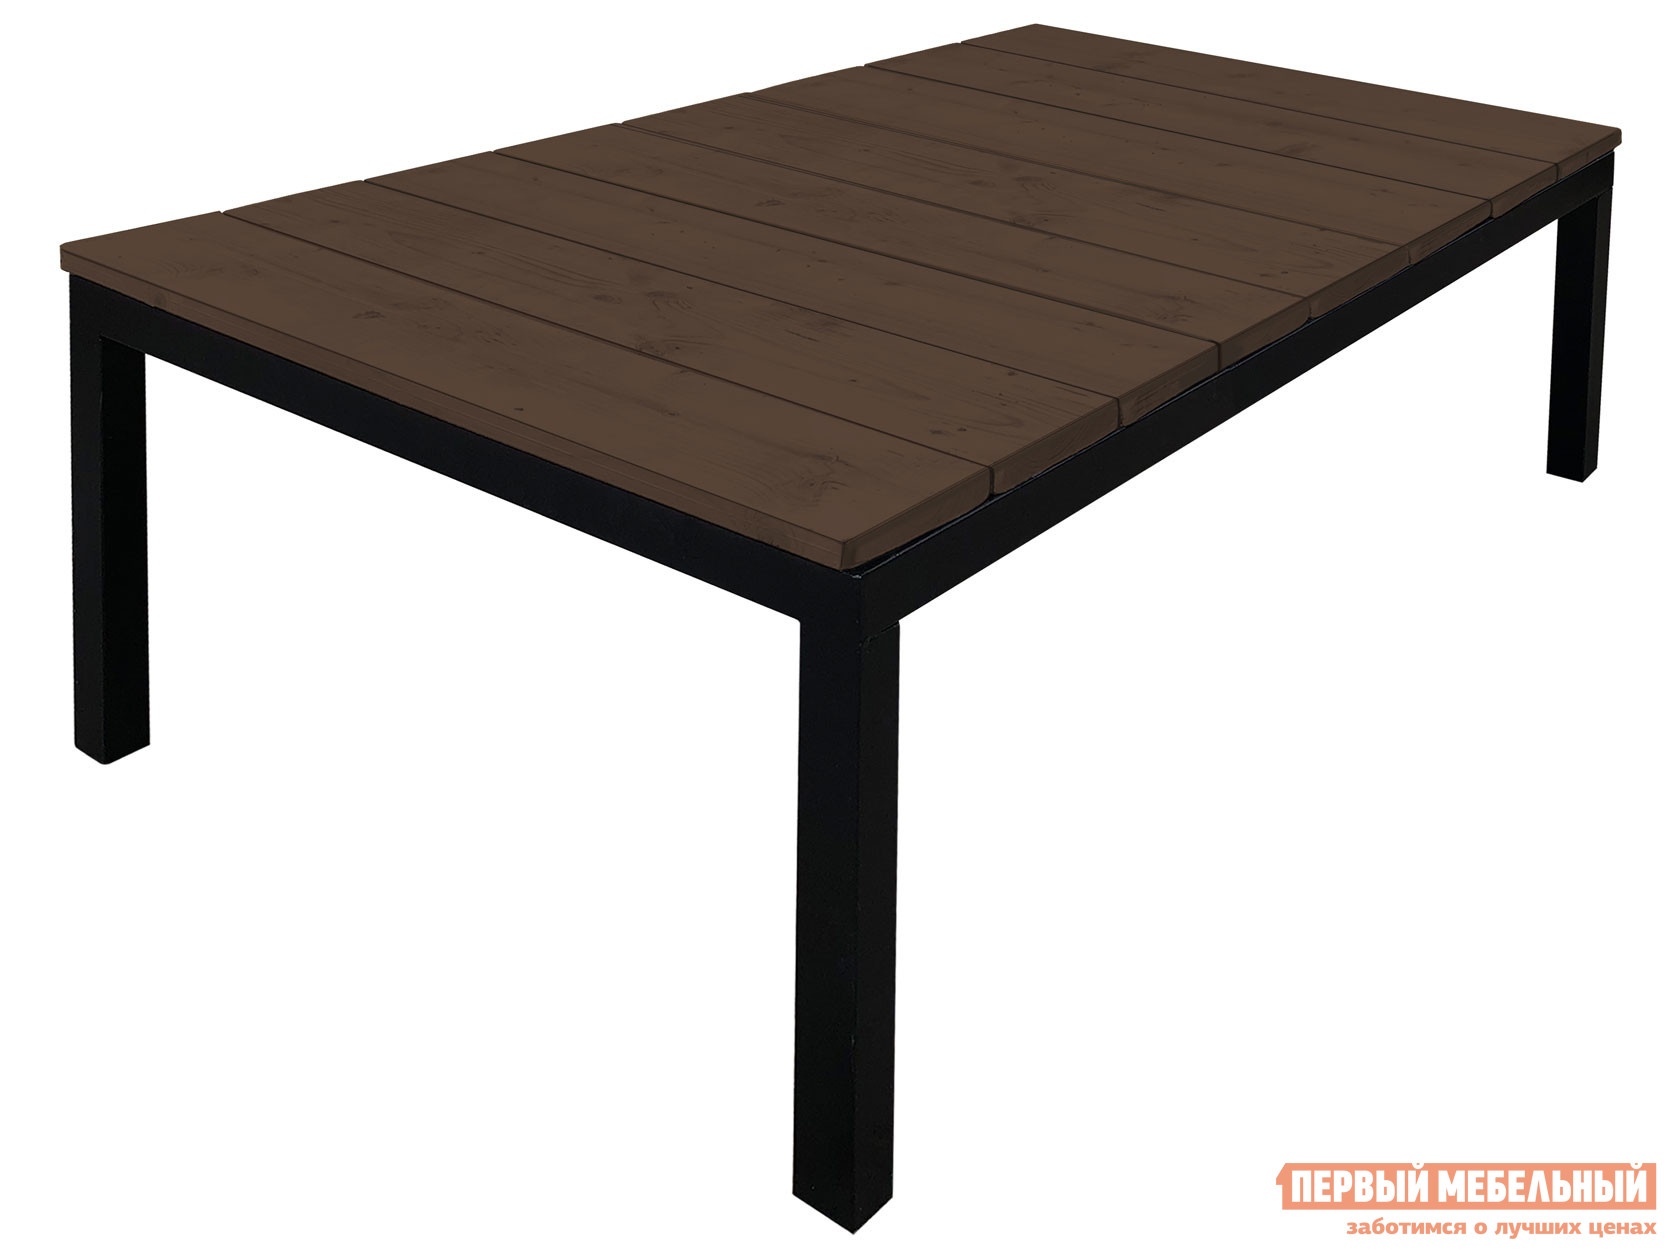 Садовый стол ректан коричневый, дерево черный, металл preview 1